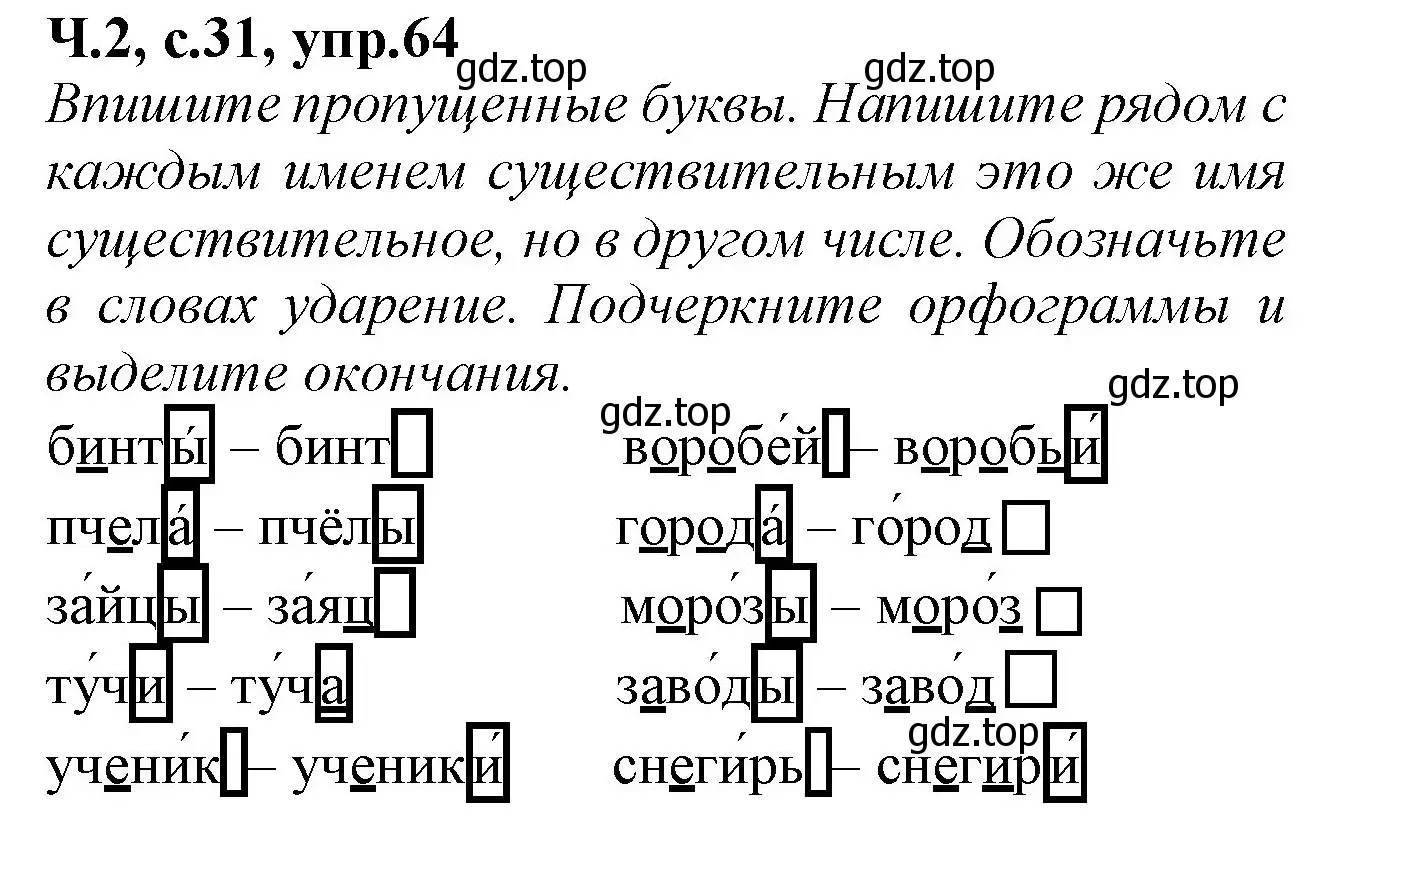 Решение номер 64 (страница 31) гдз по русскому языку 2 класс Канакина, рабочая тетрадь 2 часть